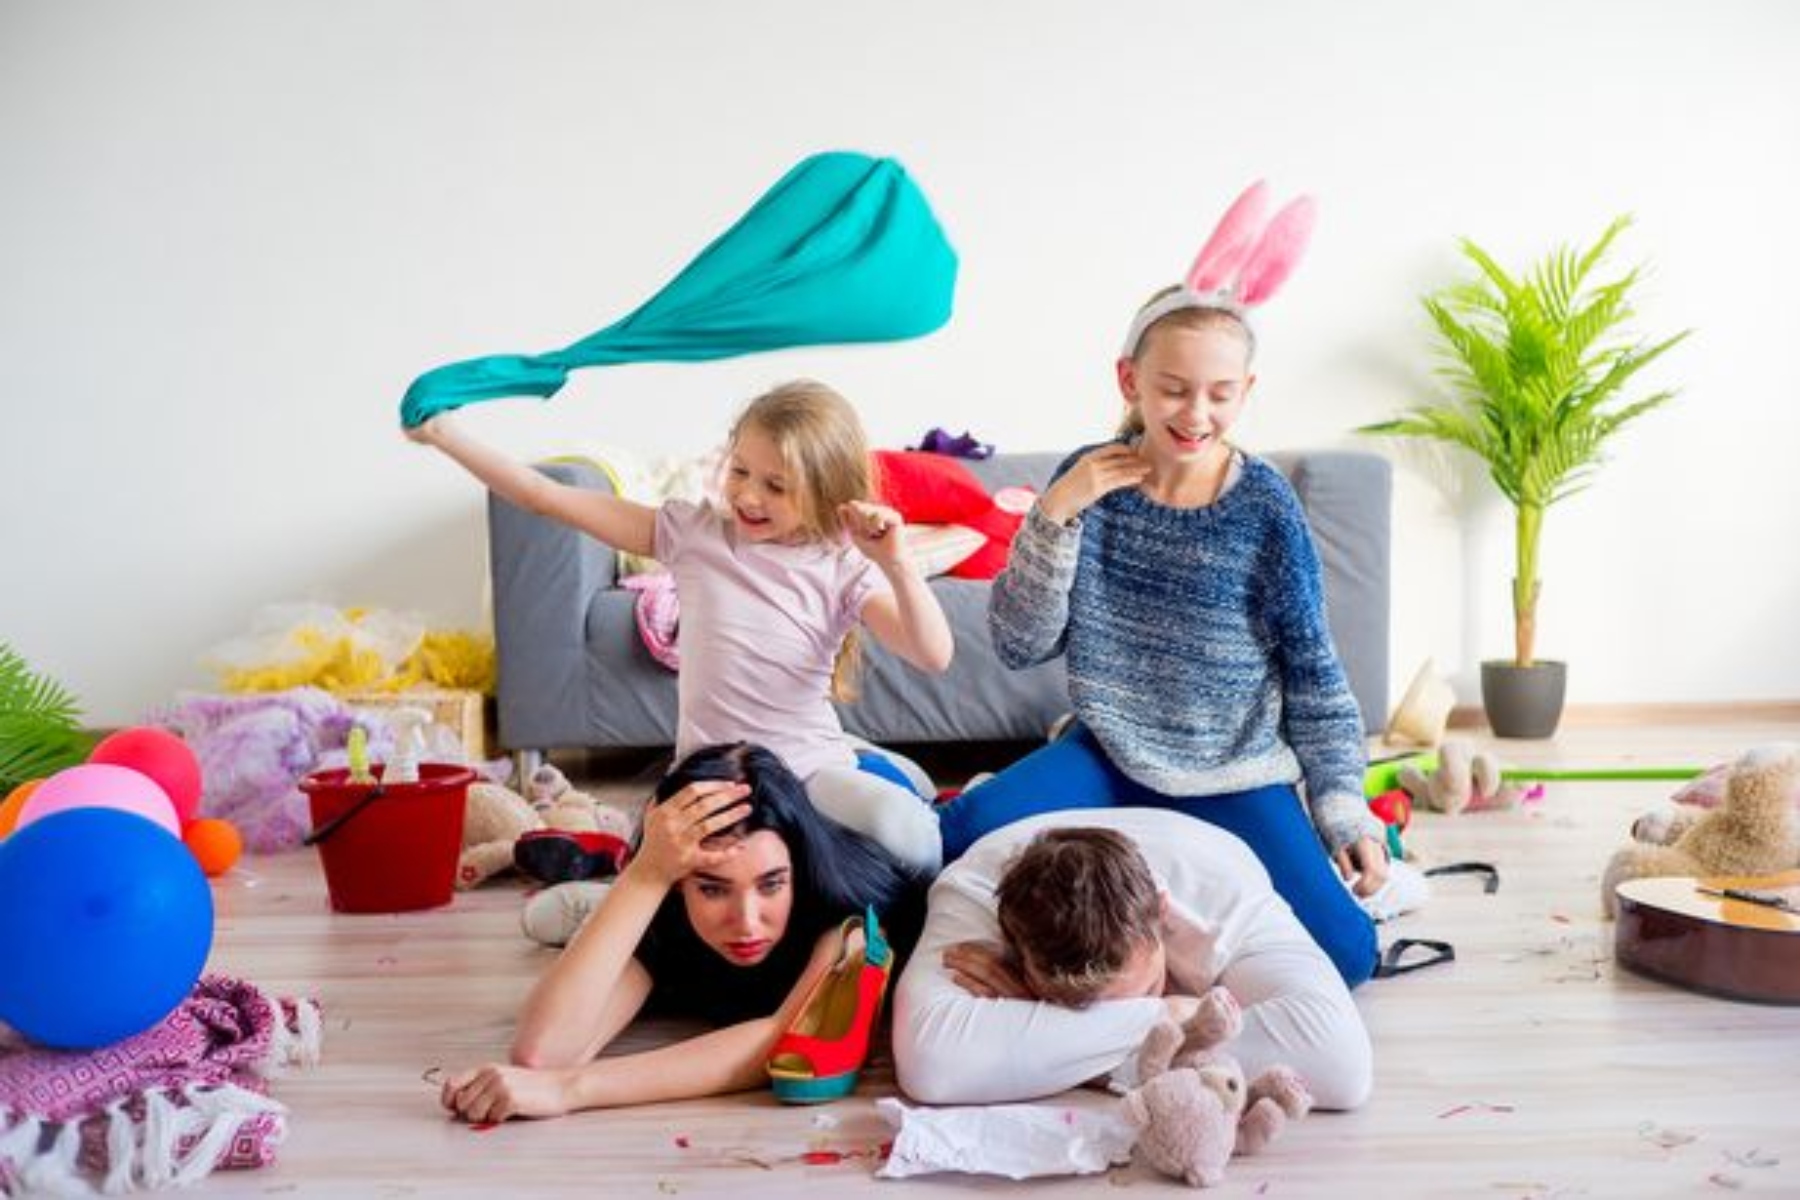 Γονείς άγχος διακοπές: Το στρες των γονιών στις διακοπές επιβαρύνει και τα παιδιά